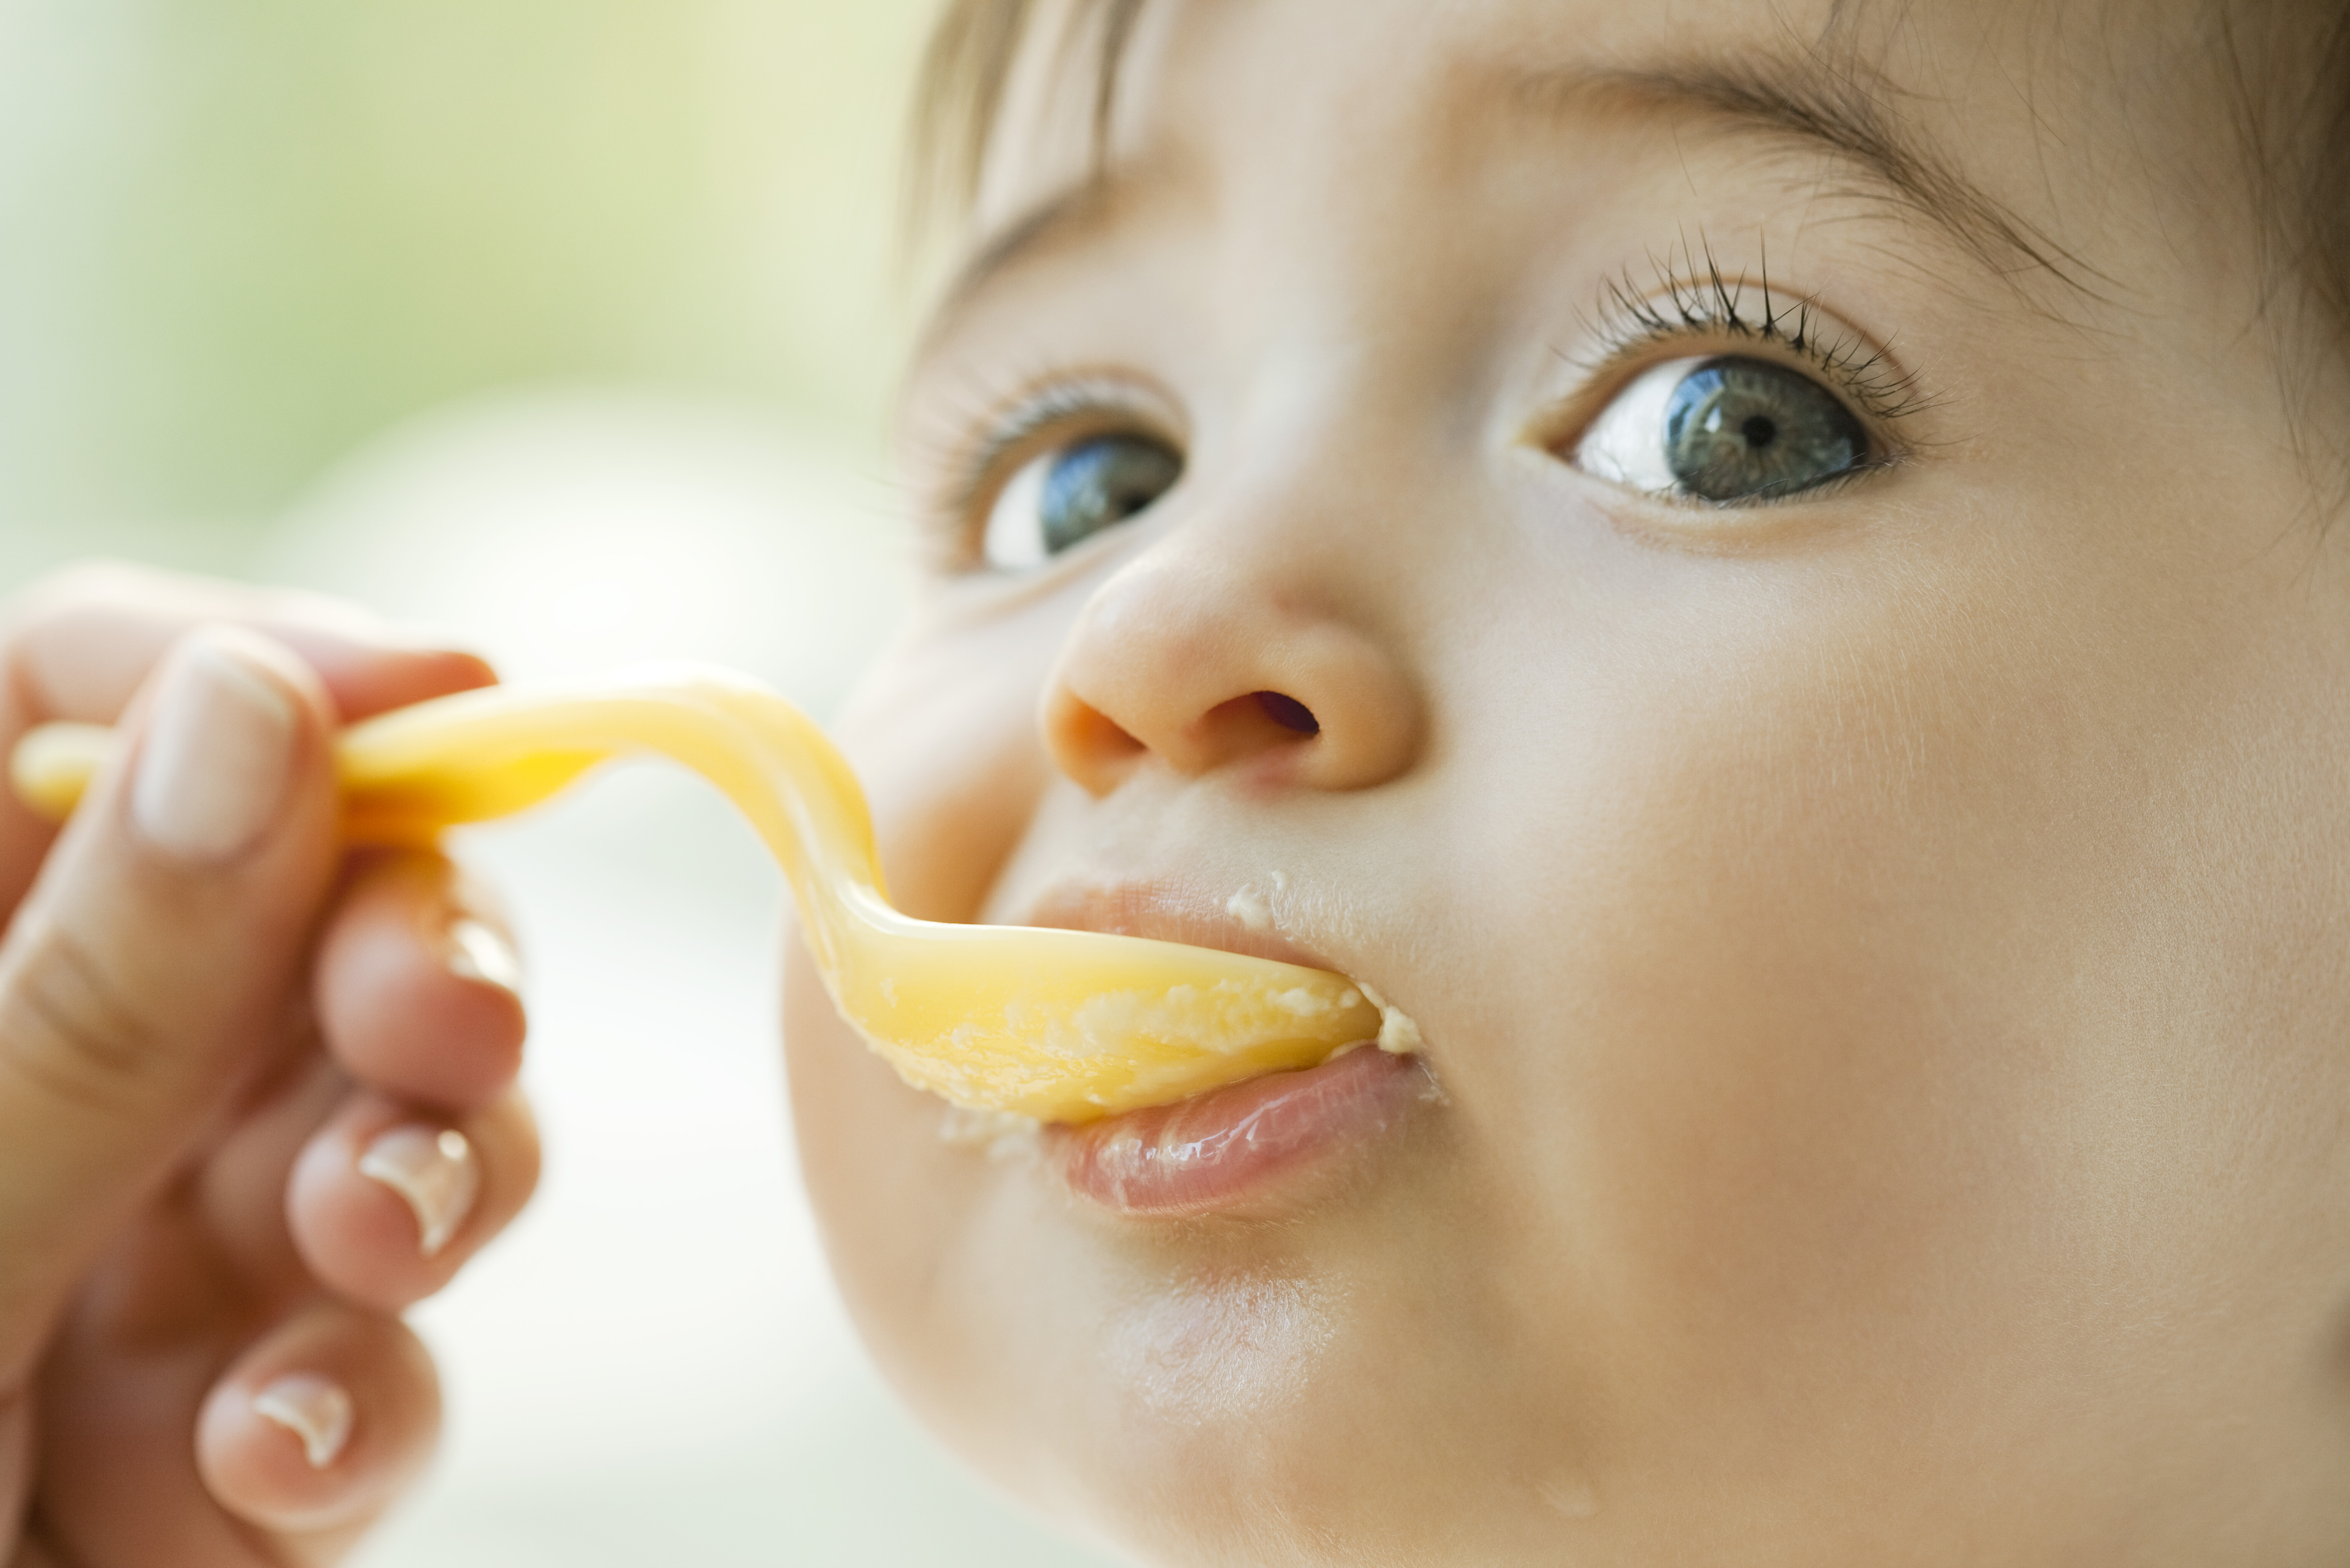 летний прикорм ребенка, сколько можно ягод малышу за один раз, как правильно вводить фрукты, как правильно вводить овощи, летний прикорм, здоровое меню, первый зуб, готовность ребенка к прикорму, аллергия, прикорм детям-аллергикам